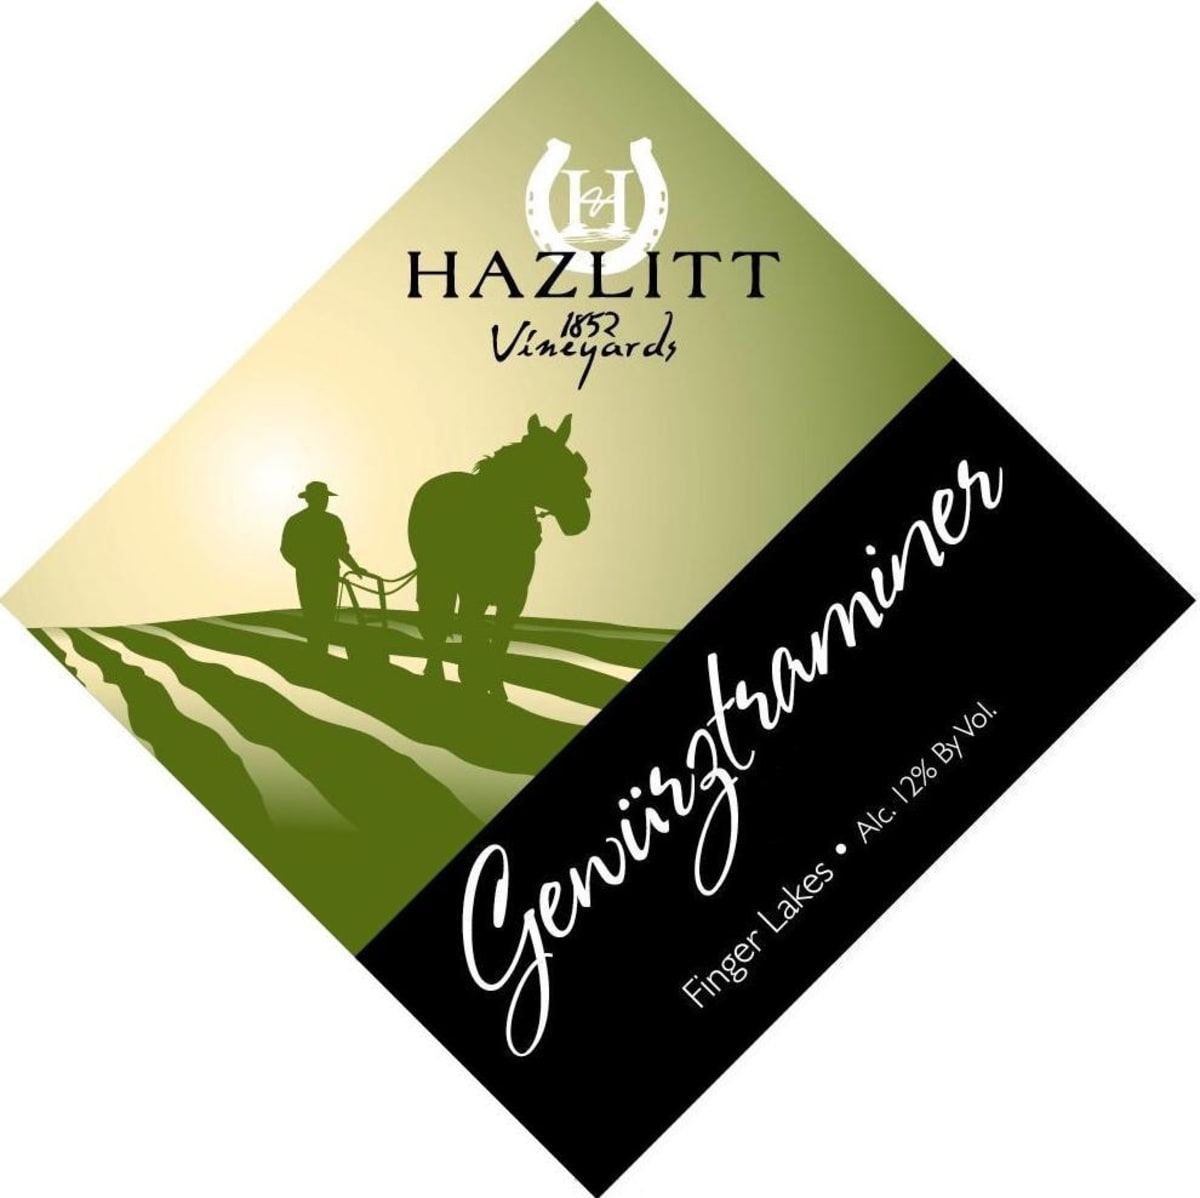 Hazlitt 1852 Vineyards  Gewurztraminer 2009 Front Label